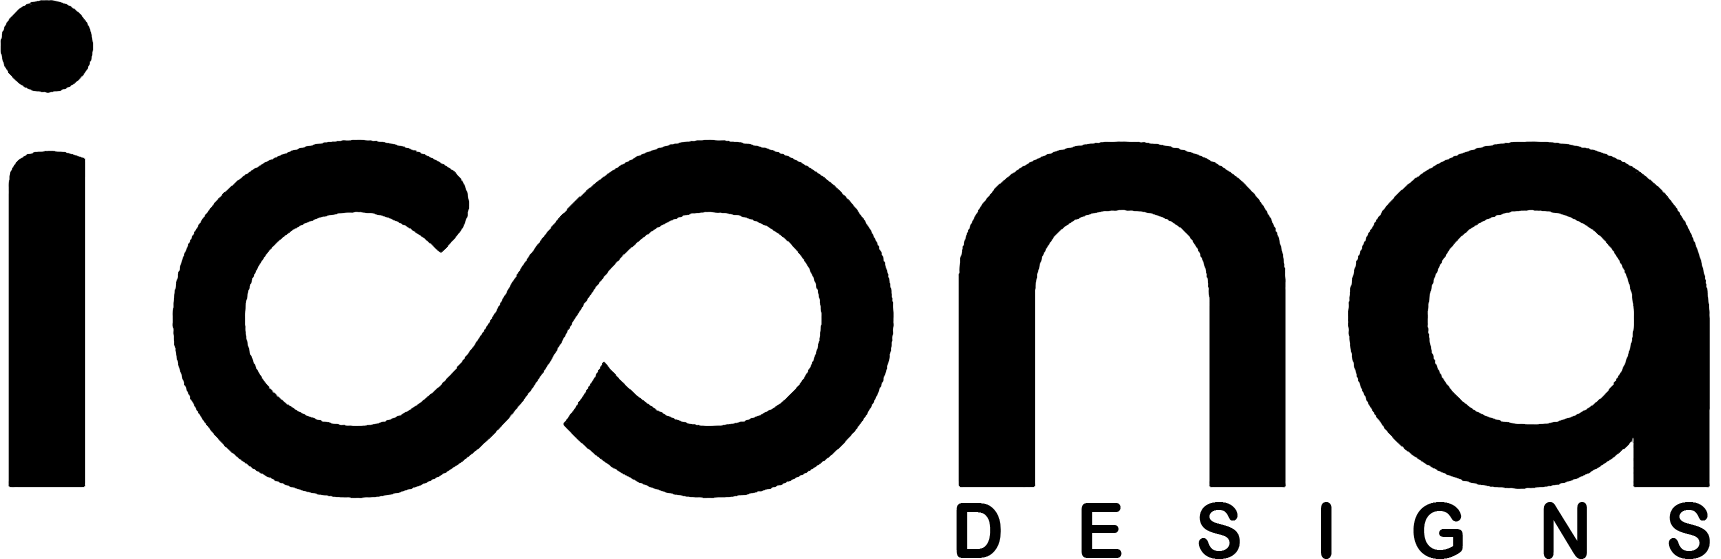  Icona logo